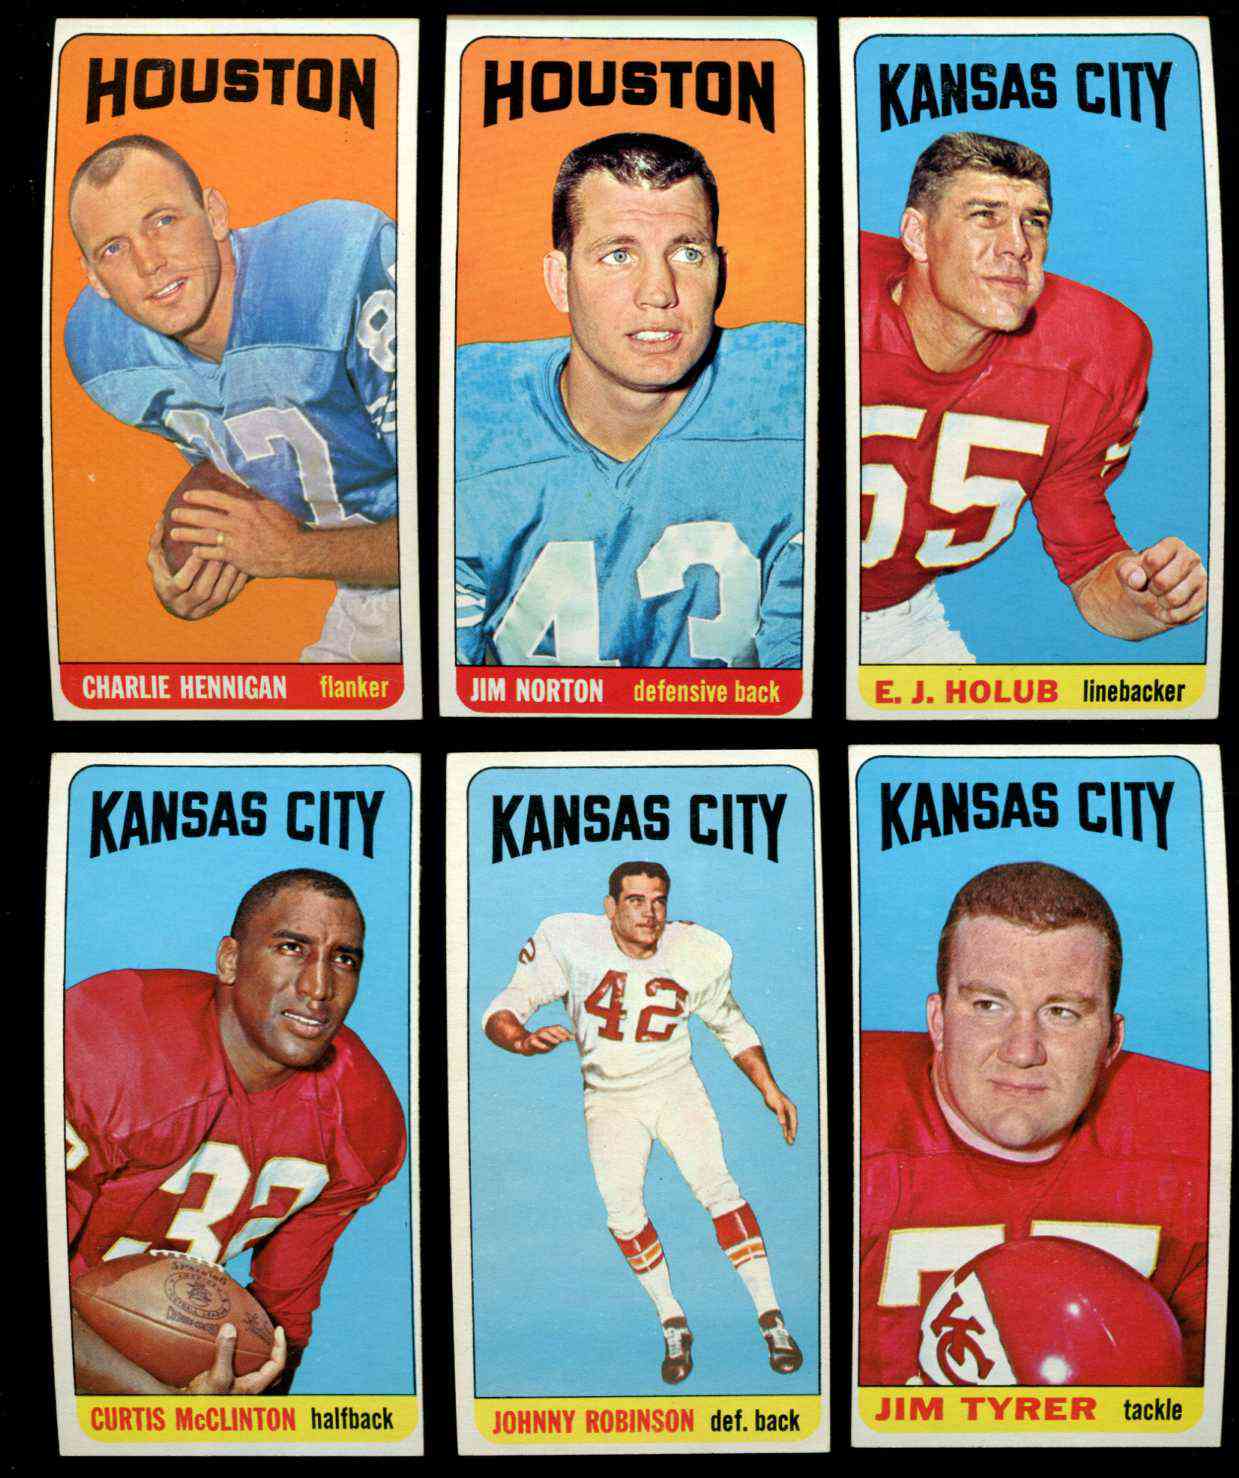 1965 Topps FB #127 Matt Snell (New York Jets) Football cards value